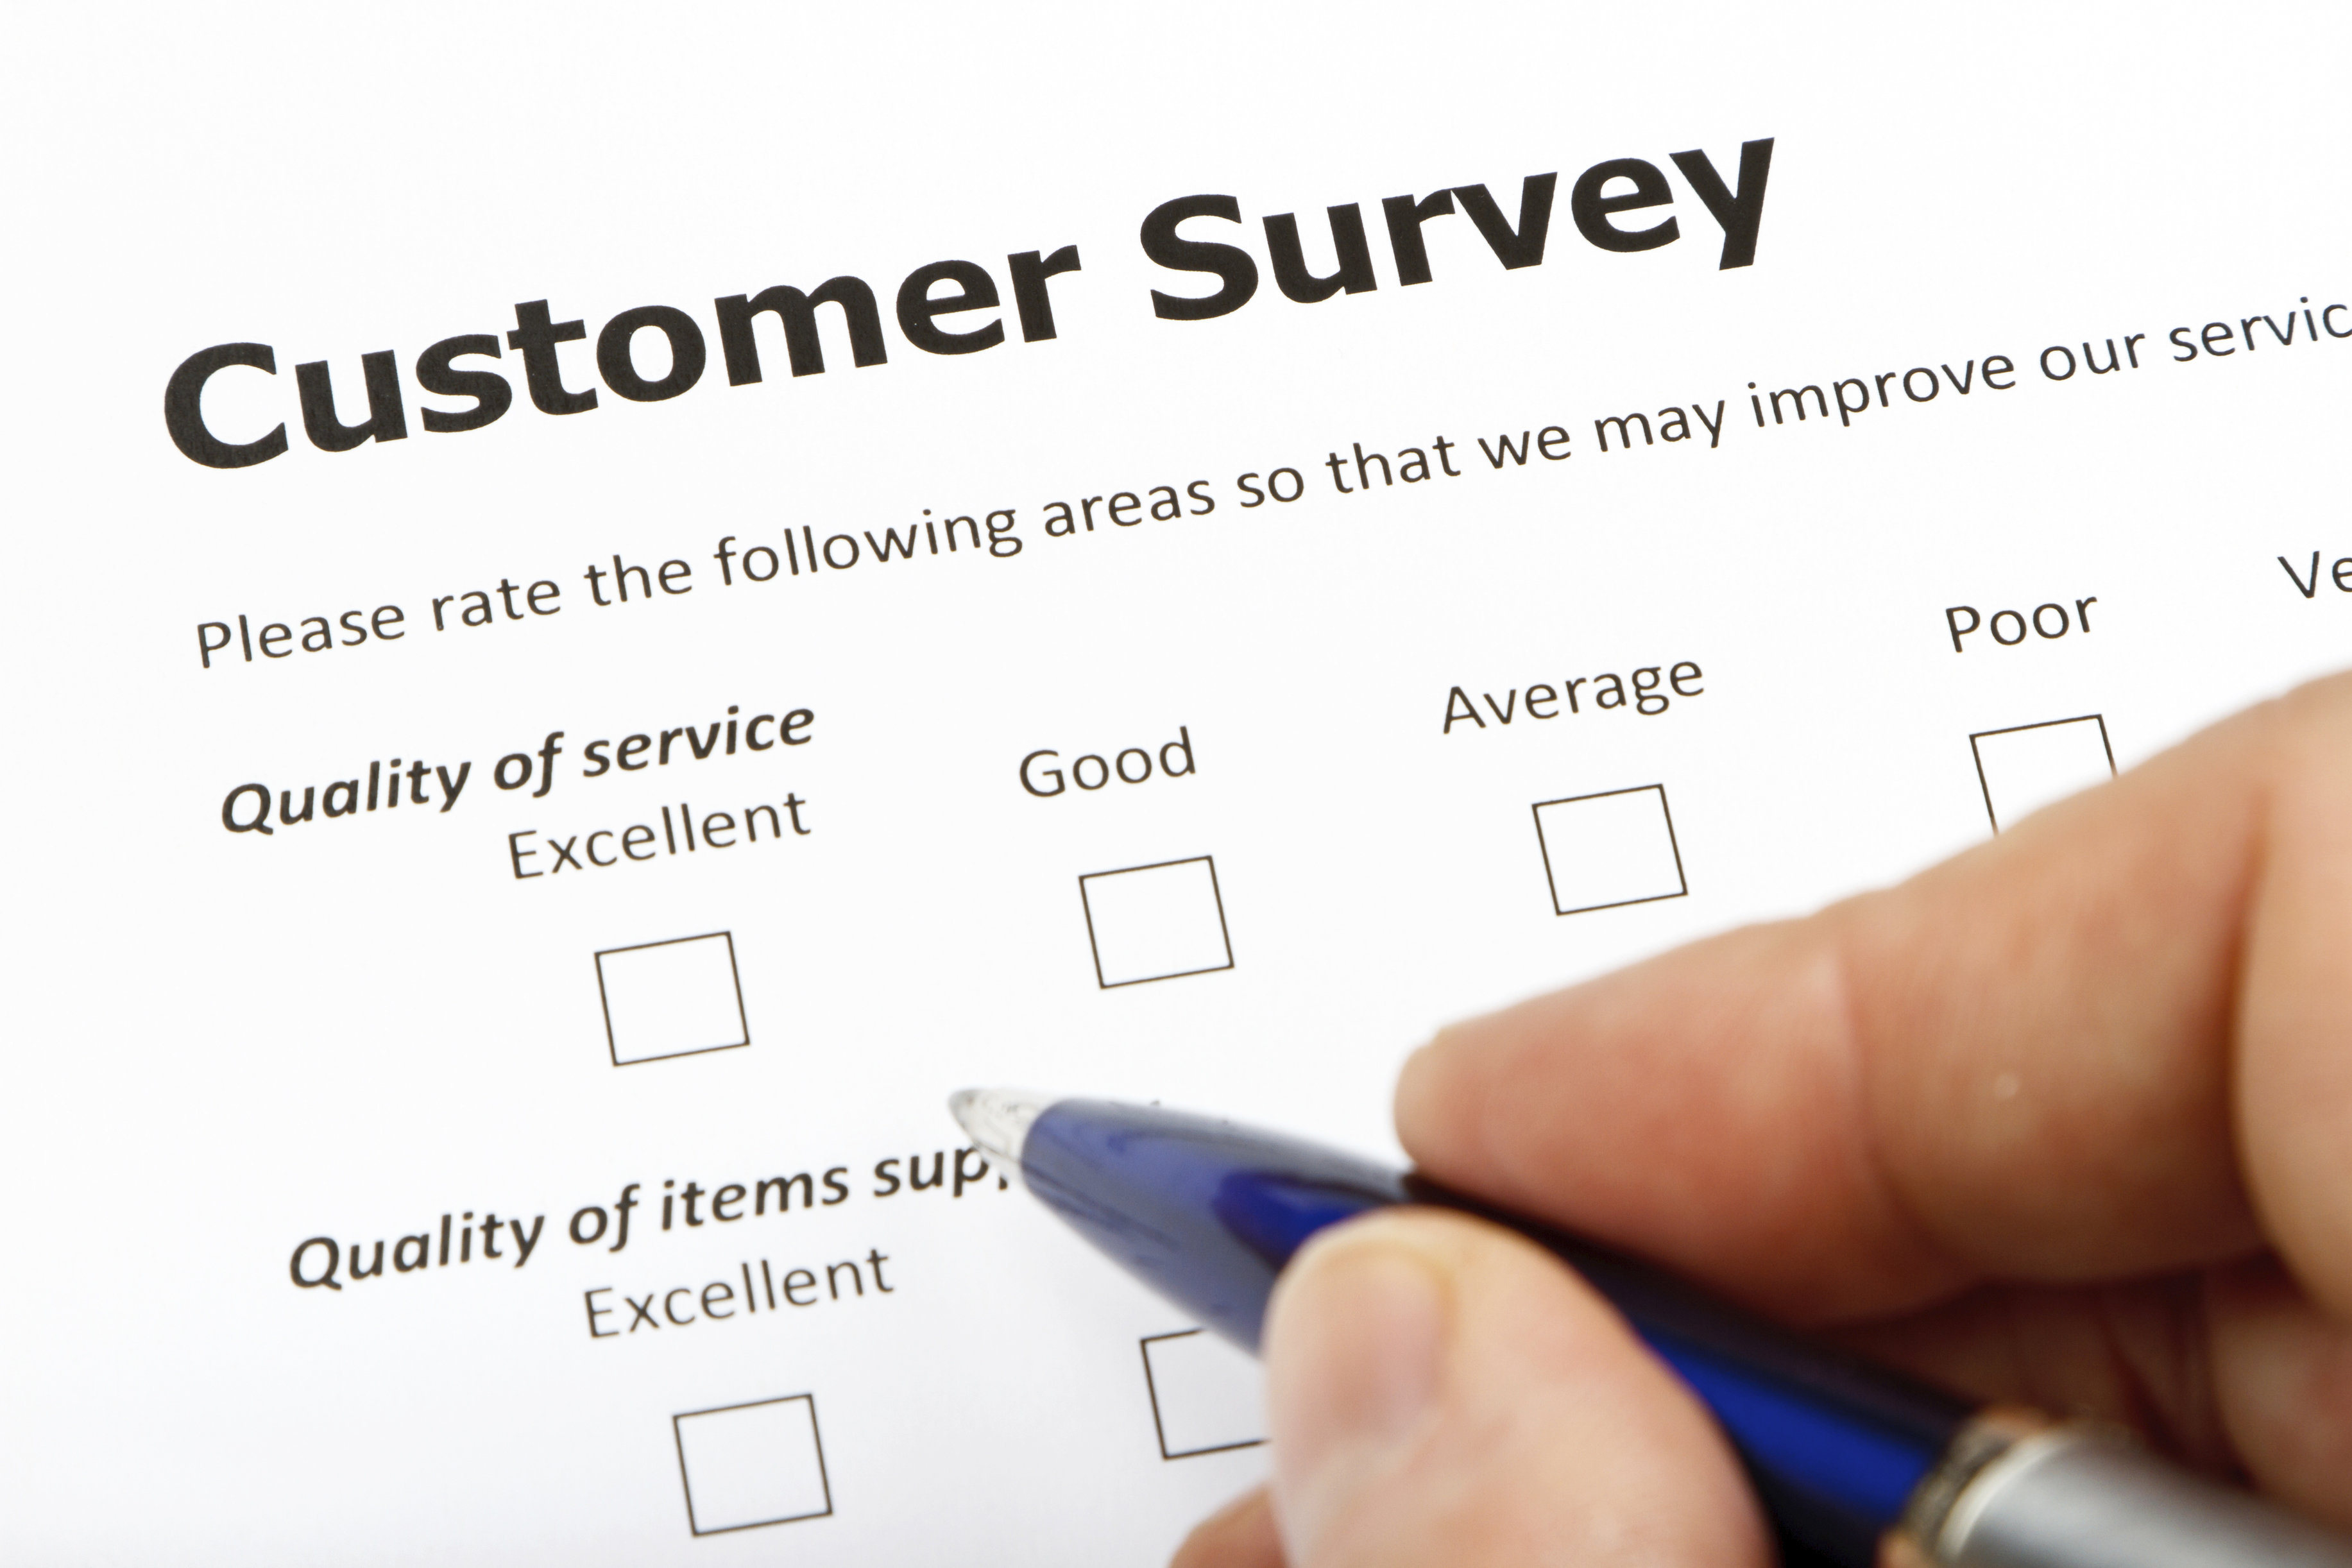 Apa kelebihan dan kekurangan dari Customer Surveys? - #2 by ...